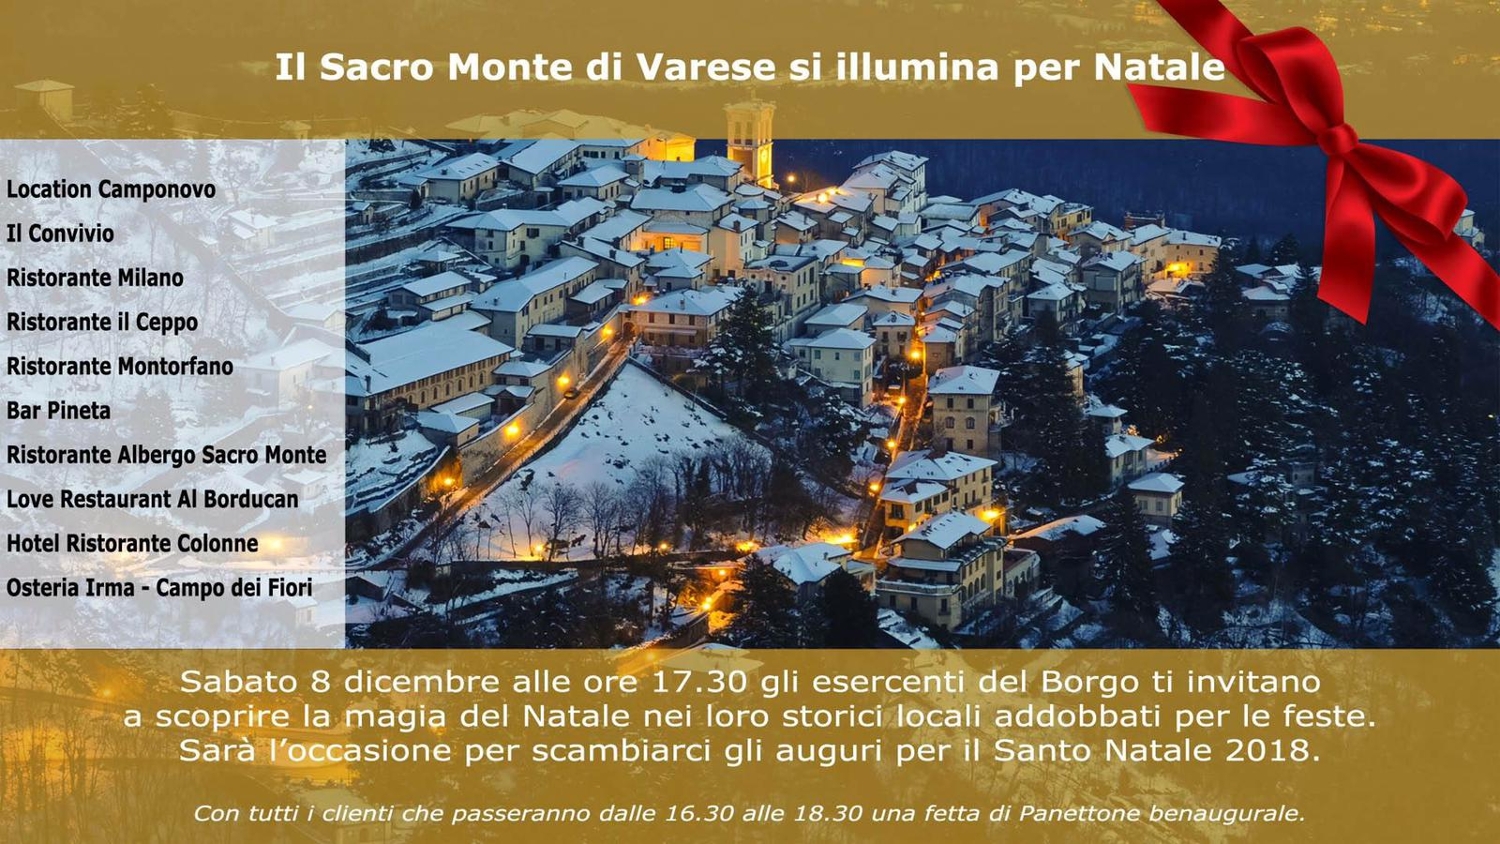 Il Sacro Monte di Varese si illumina per Natale